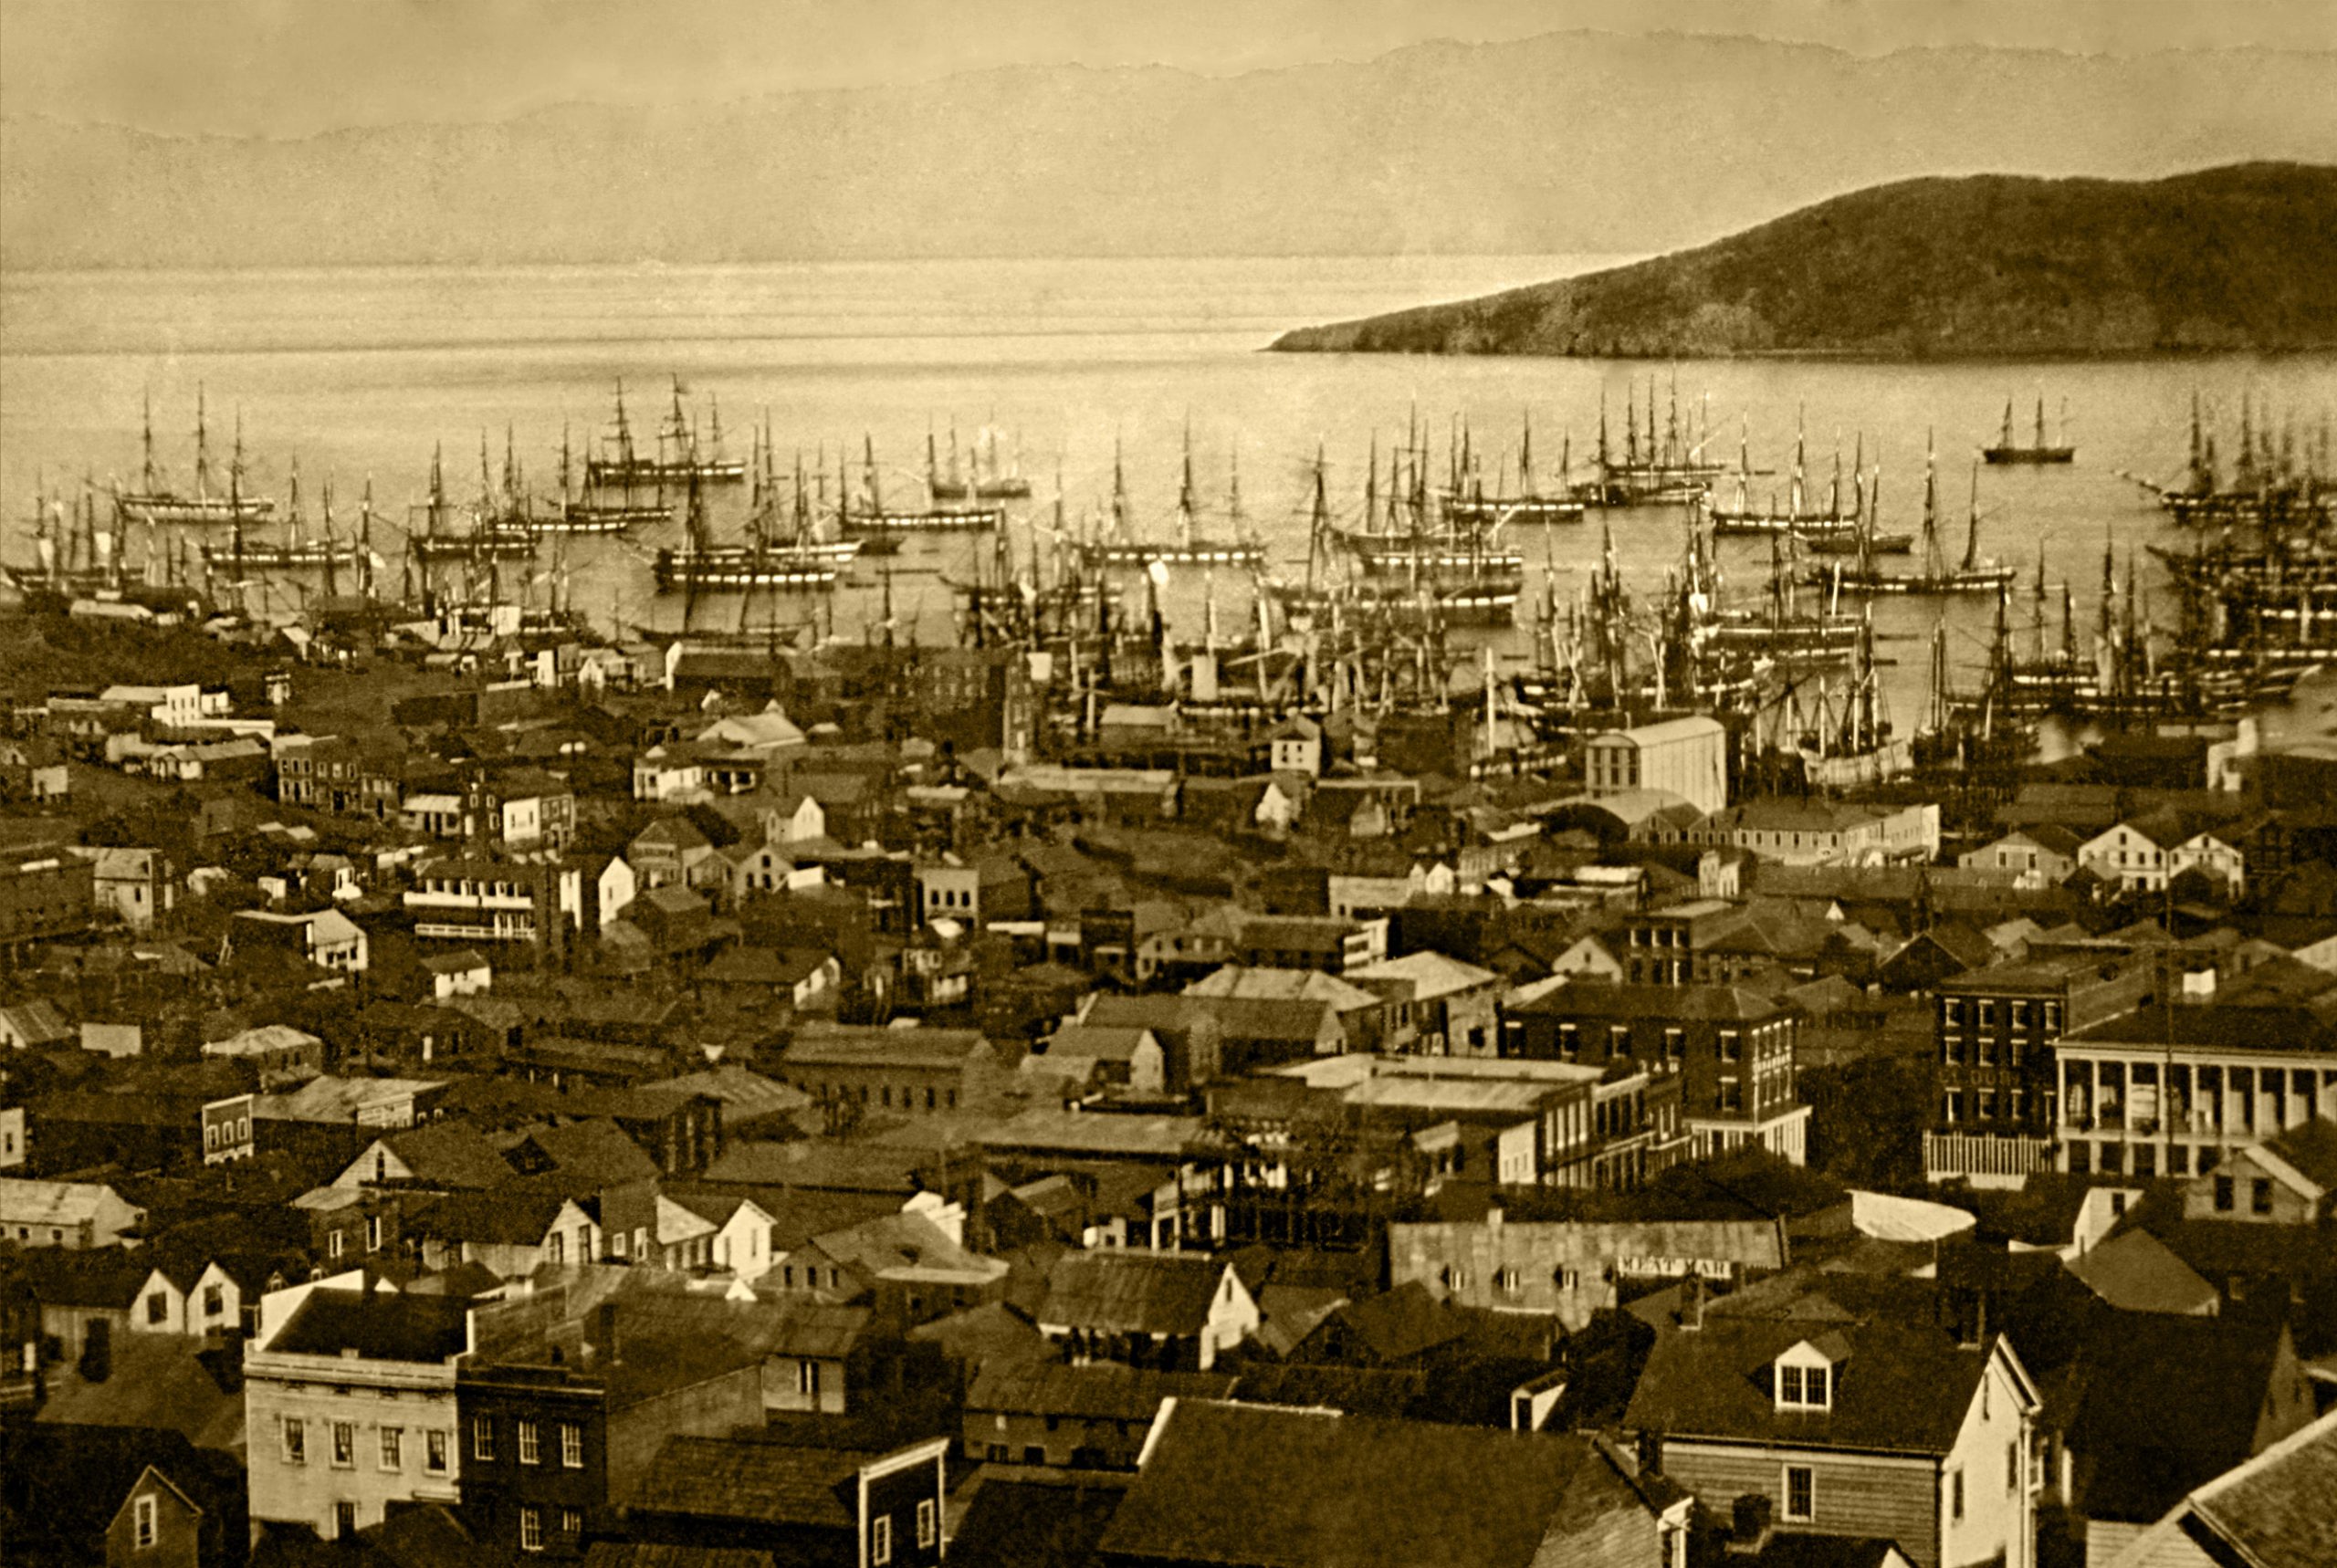 San Francisco in 1891